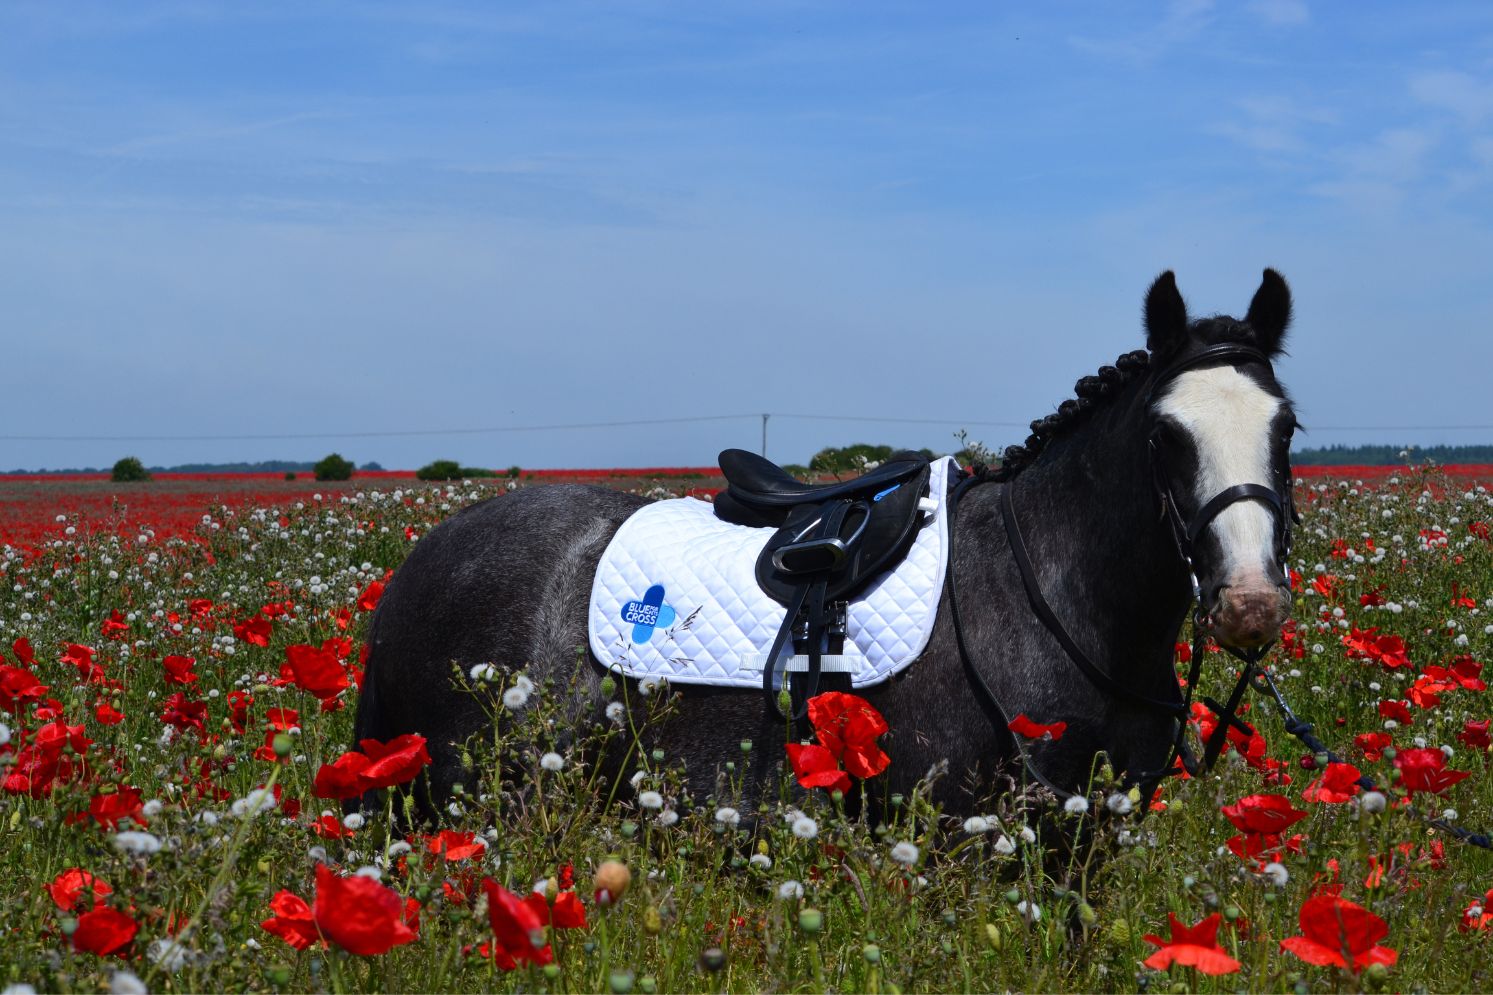 Blue Cross pony standing in a field of flowers